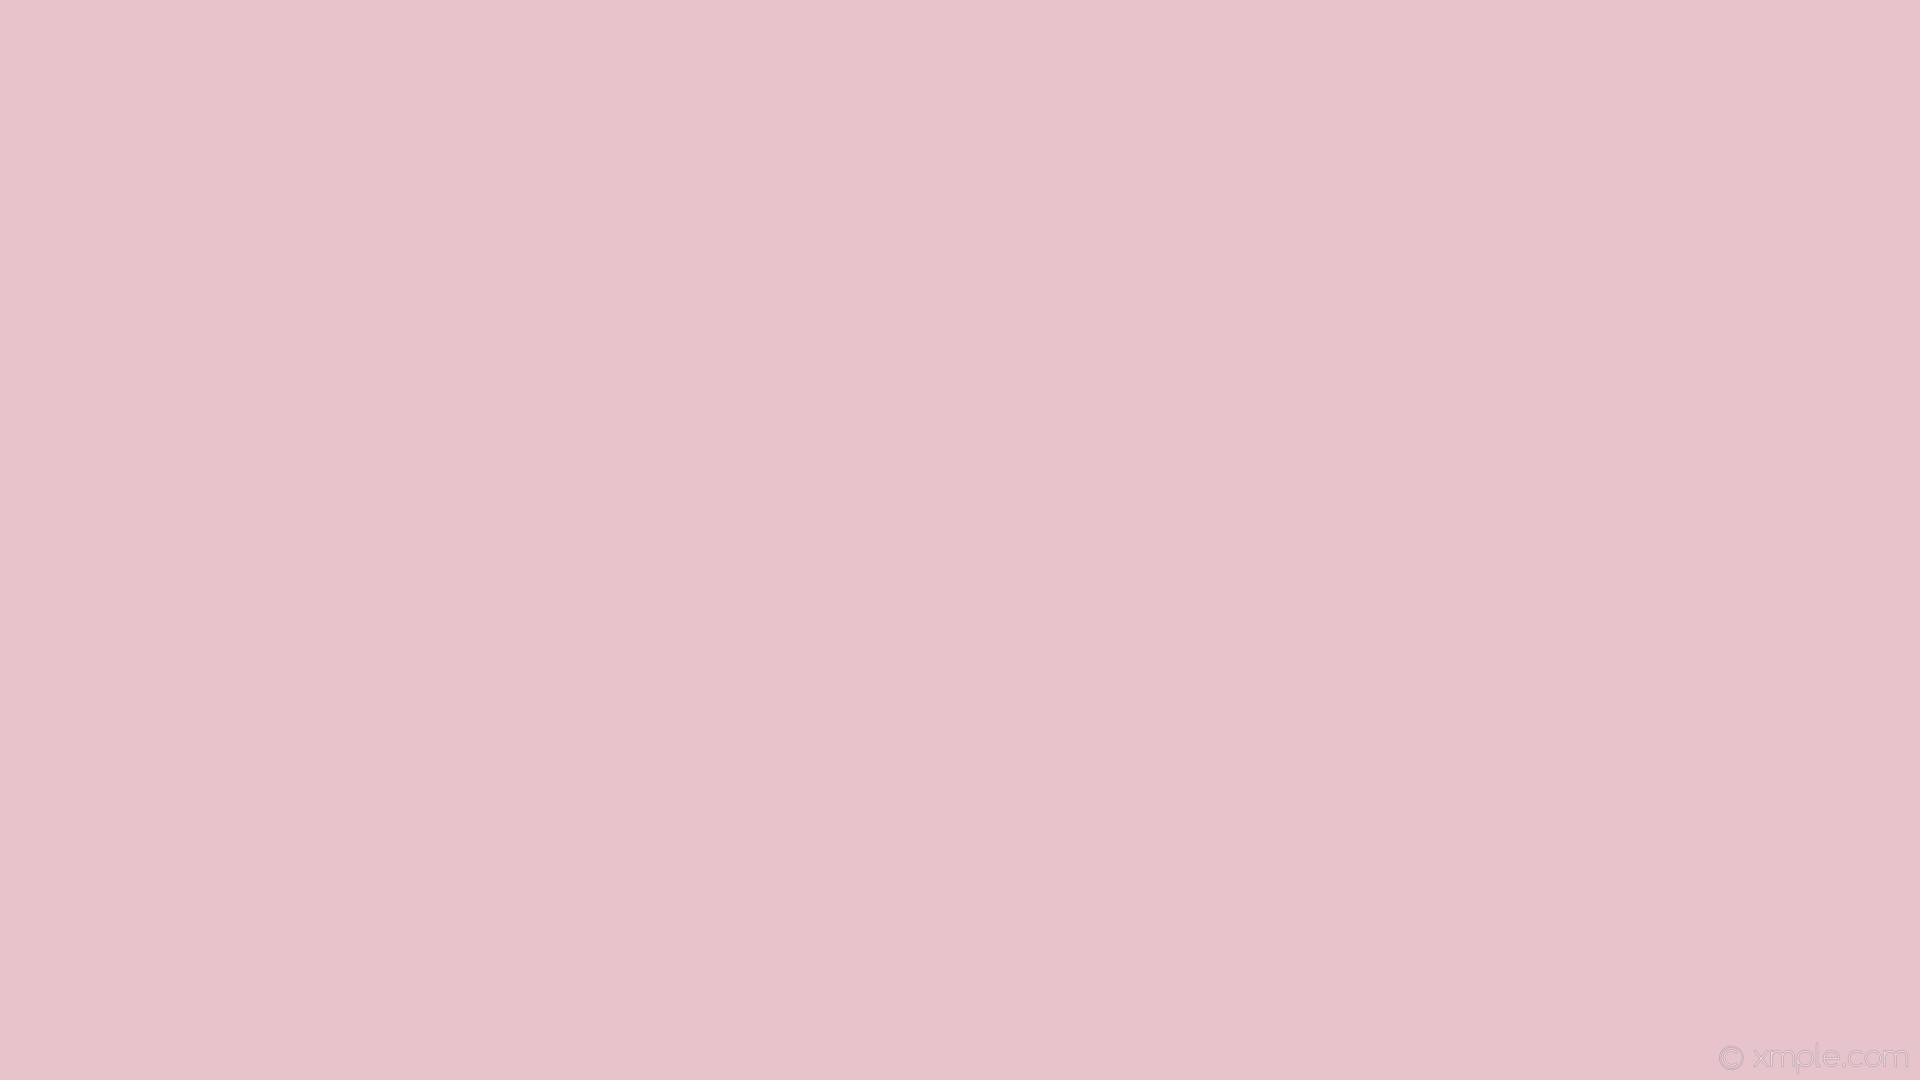 1920x1080 wallpaper one colour pink plain solid color single light pink #e7c3cc